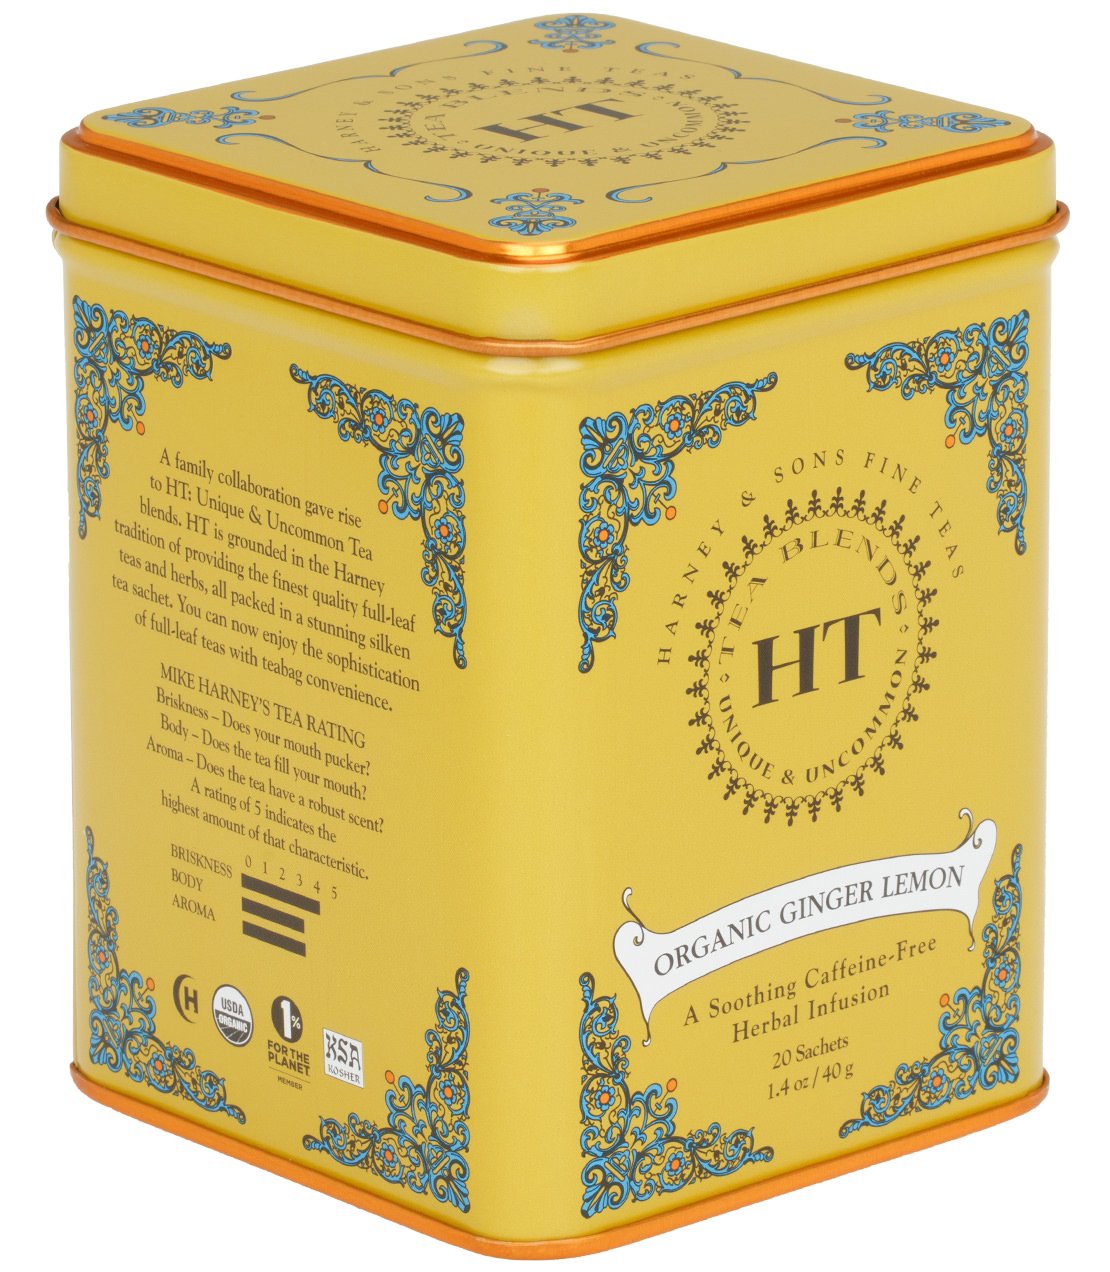 Organic Ginger Lemon, HT Tin of 20 Sachets -   - Harney & Sons Fine Teas